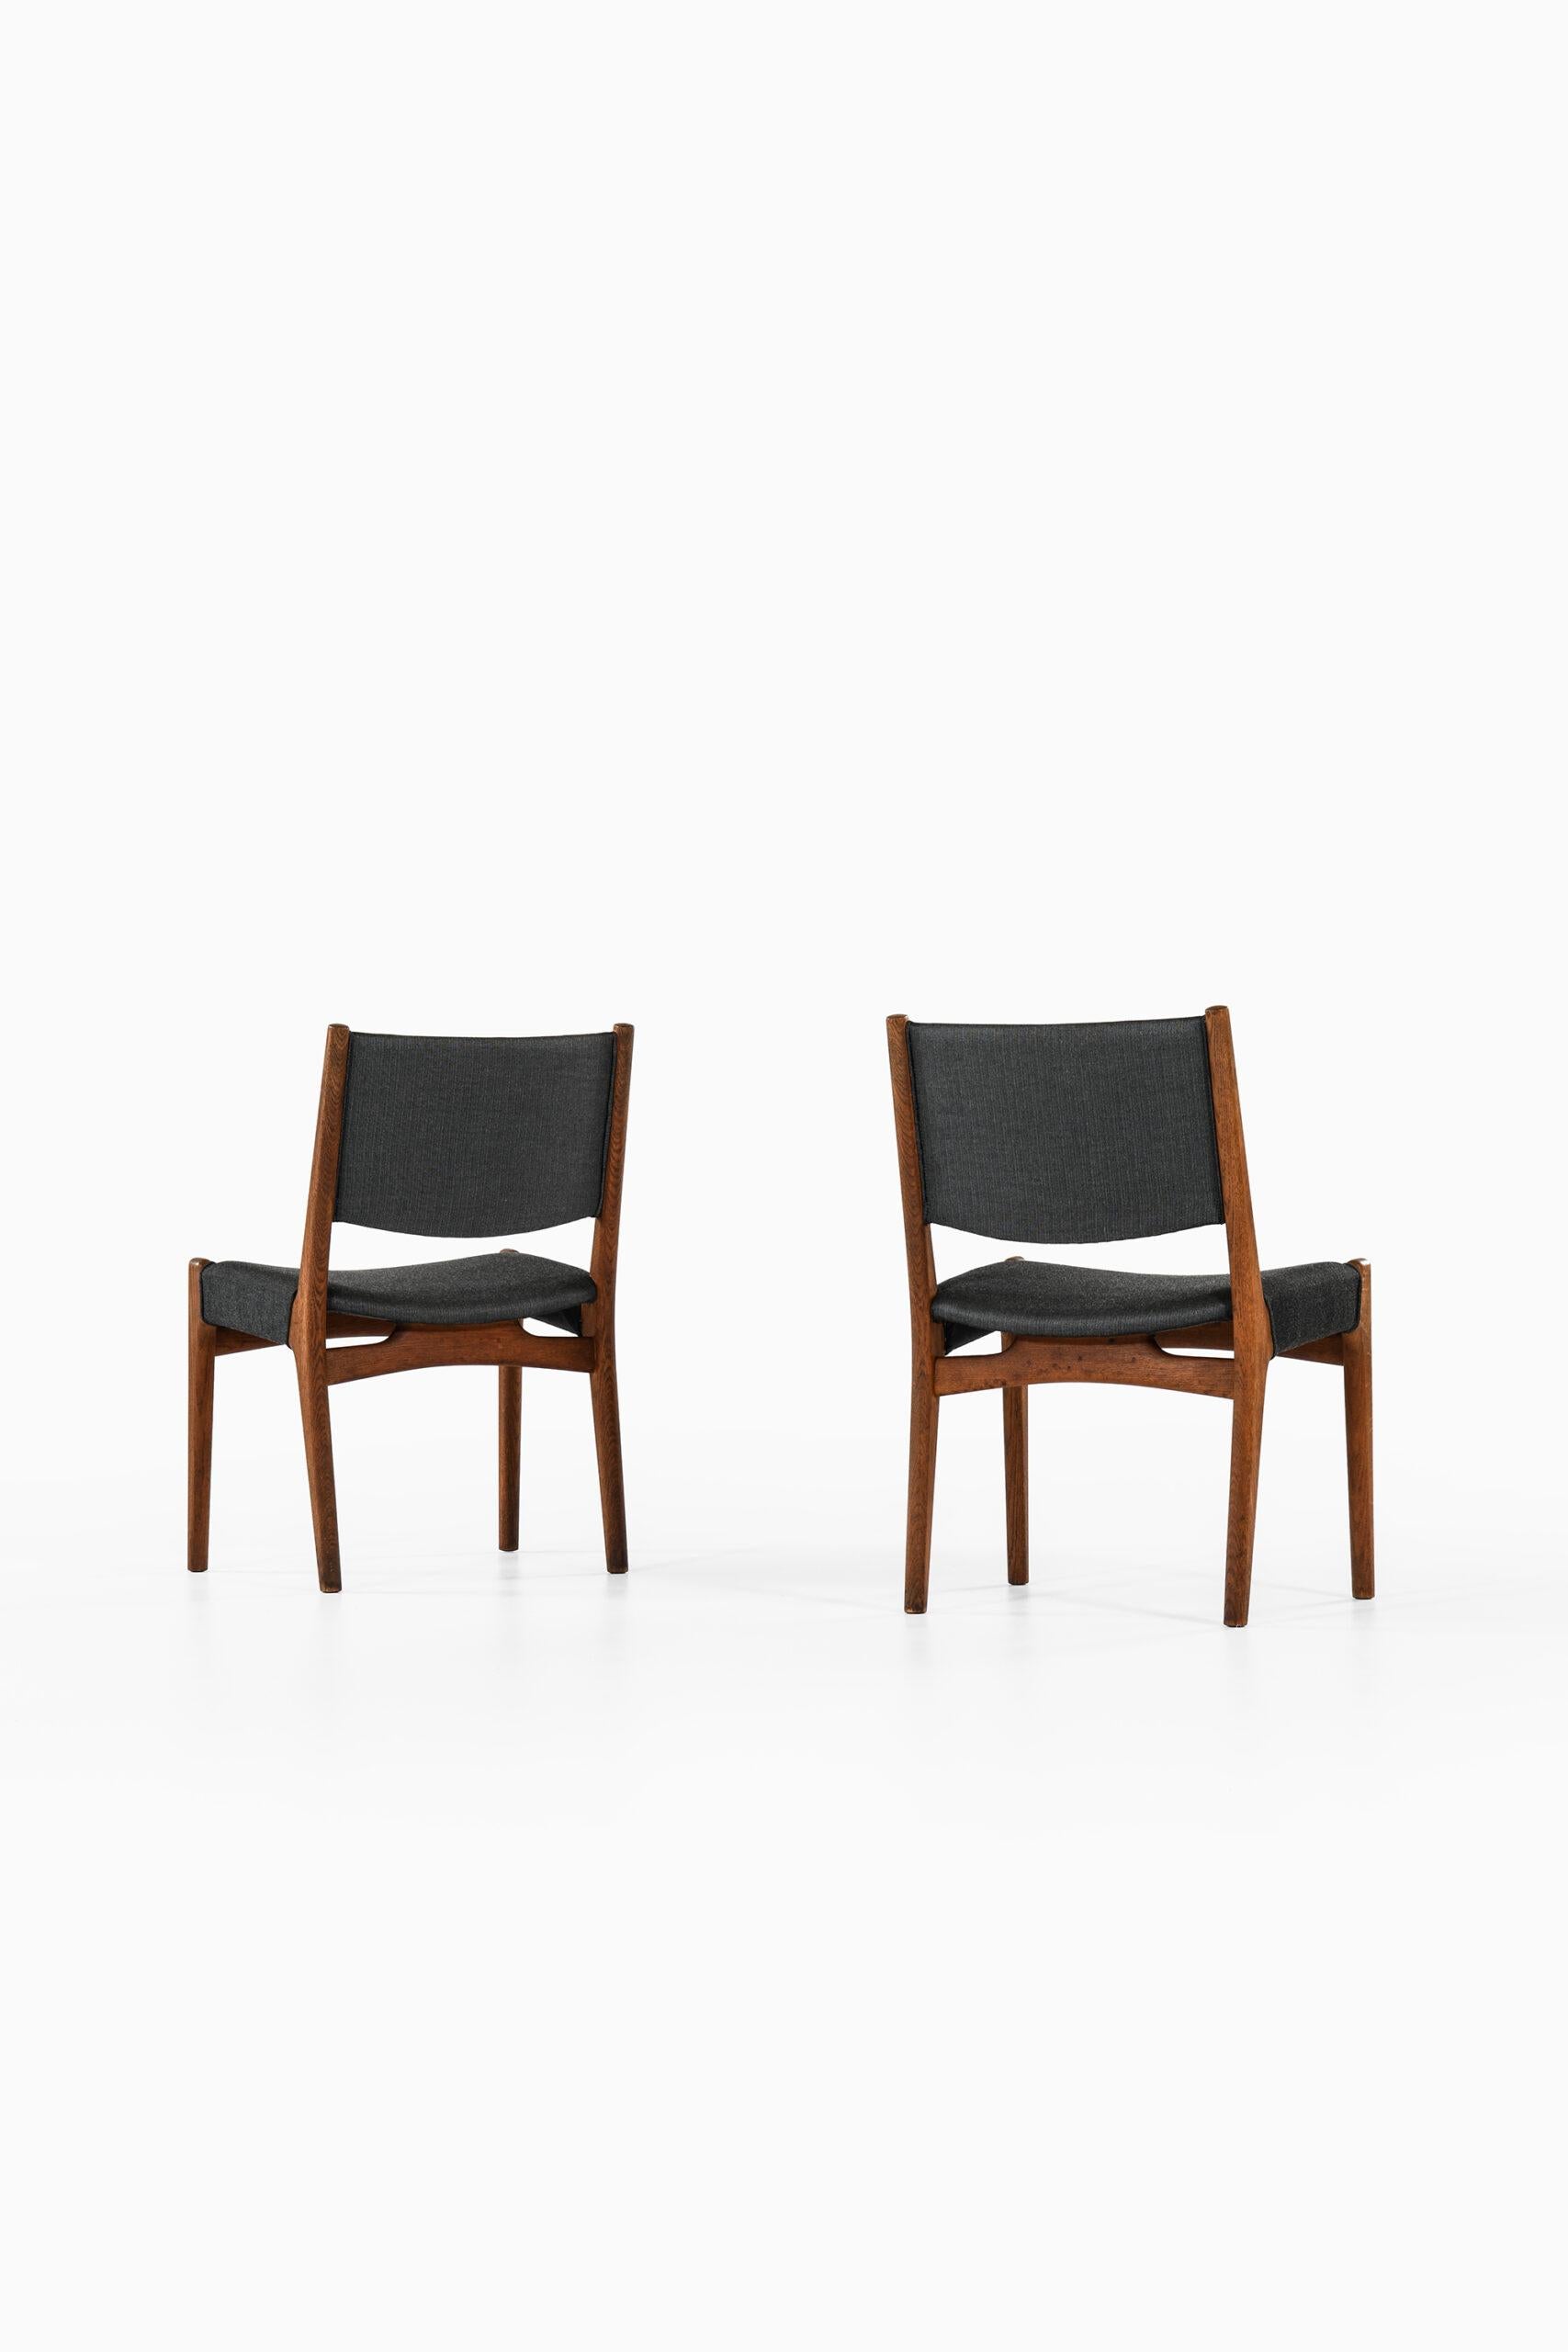 Hans Wegner Dining Chairs by Cabinetmaker Johannes Hansen in Denmark For Sale 5